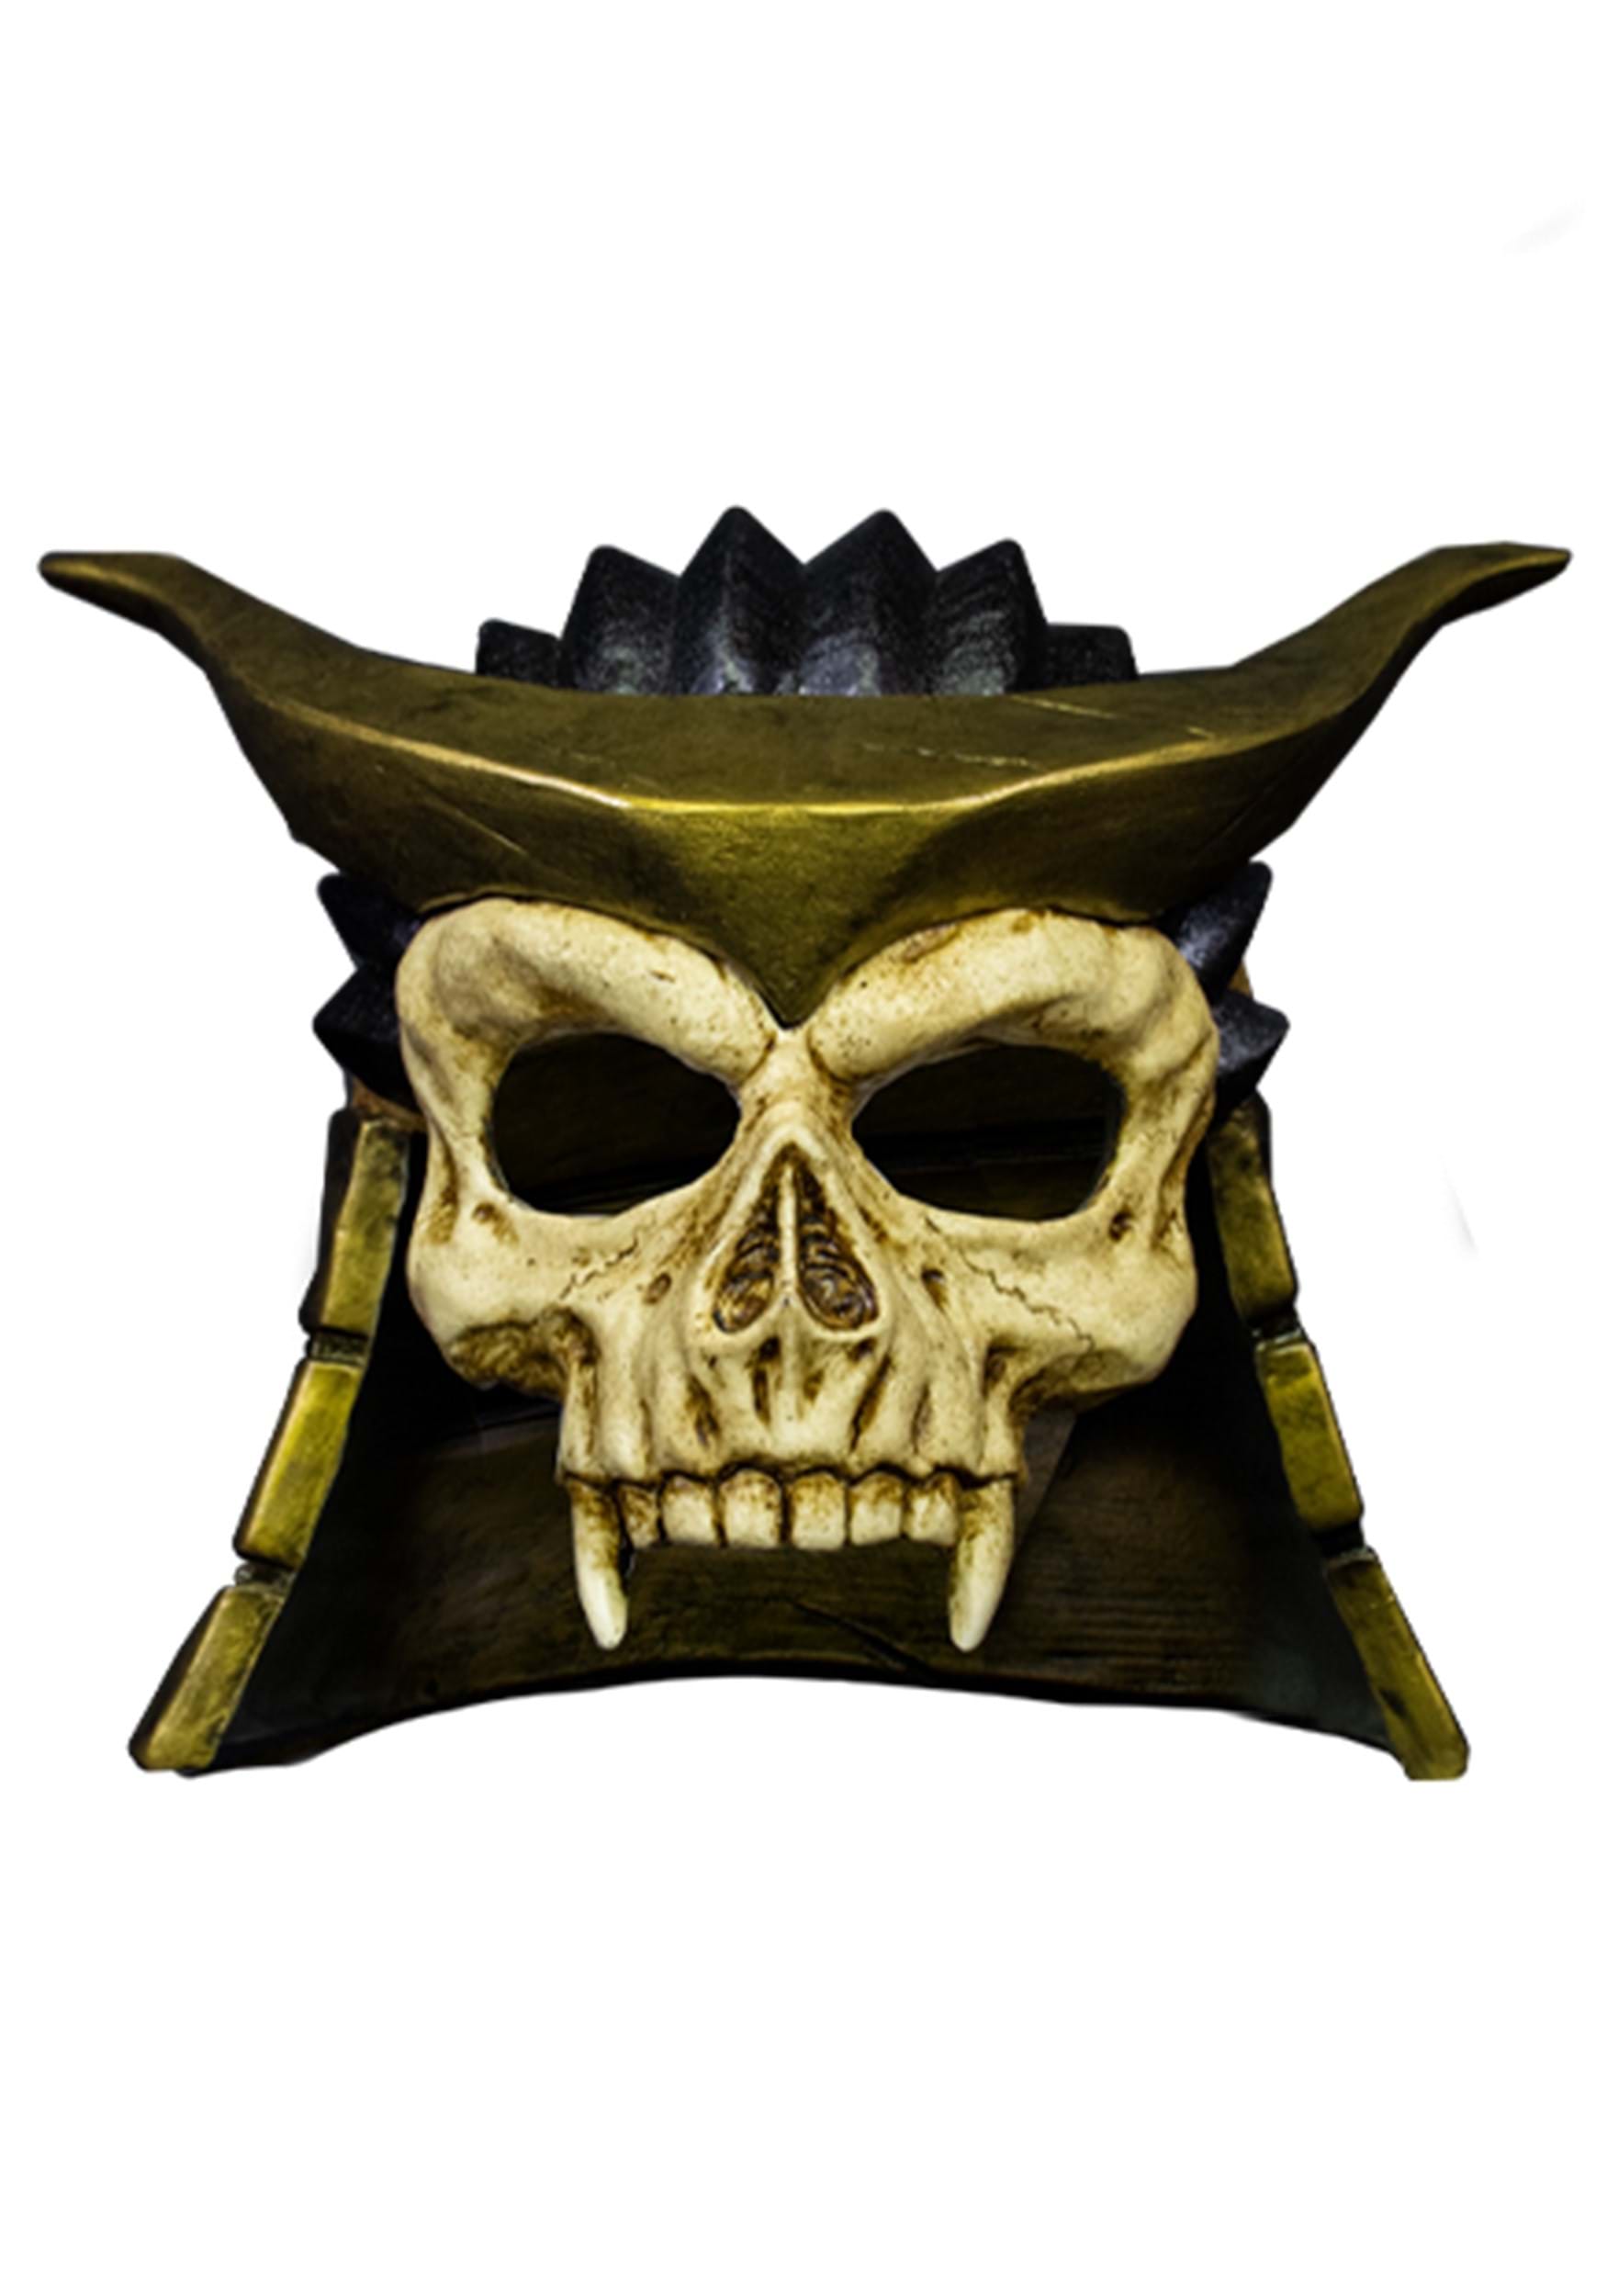 Halloween horror bloody warrior skull mask game horror skull mask